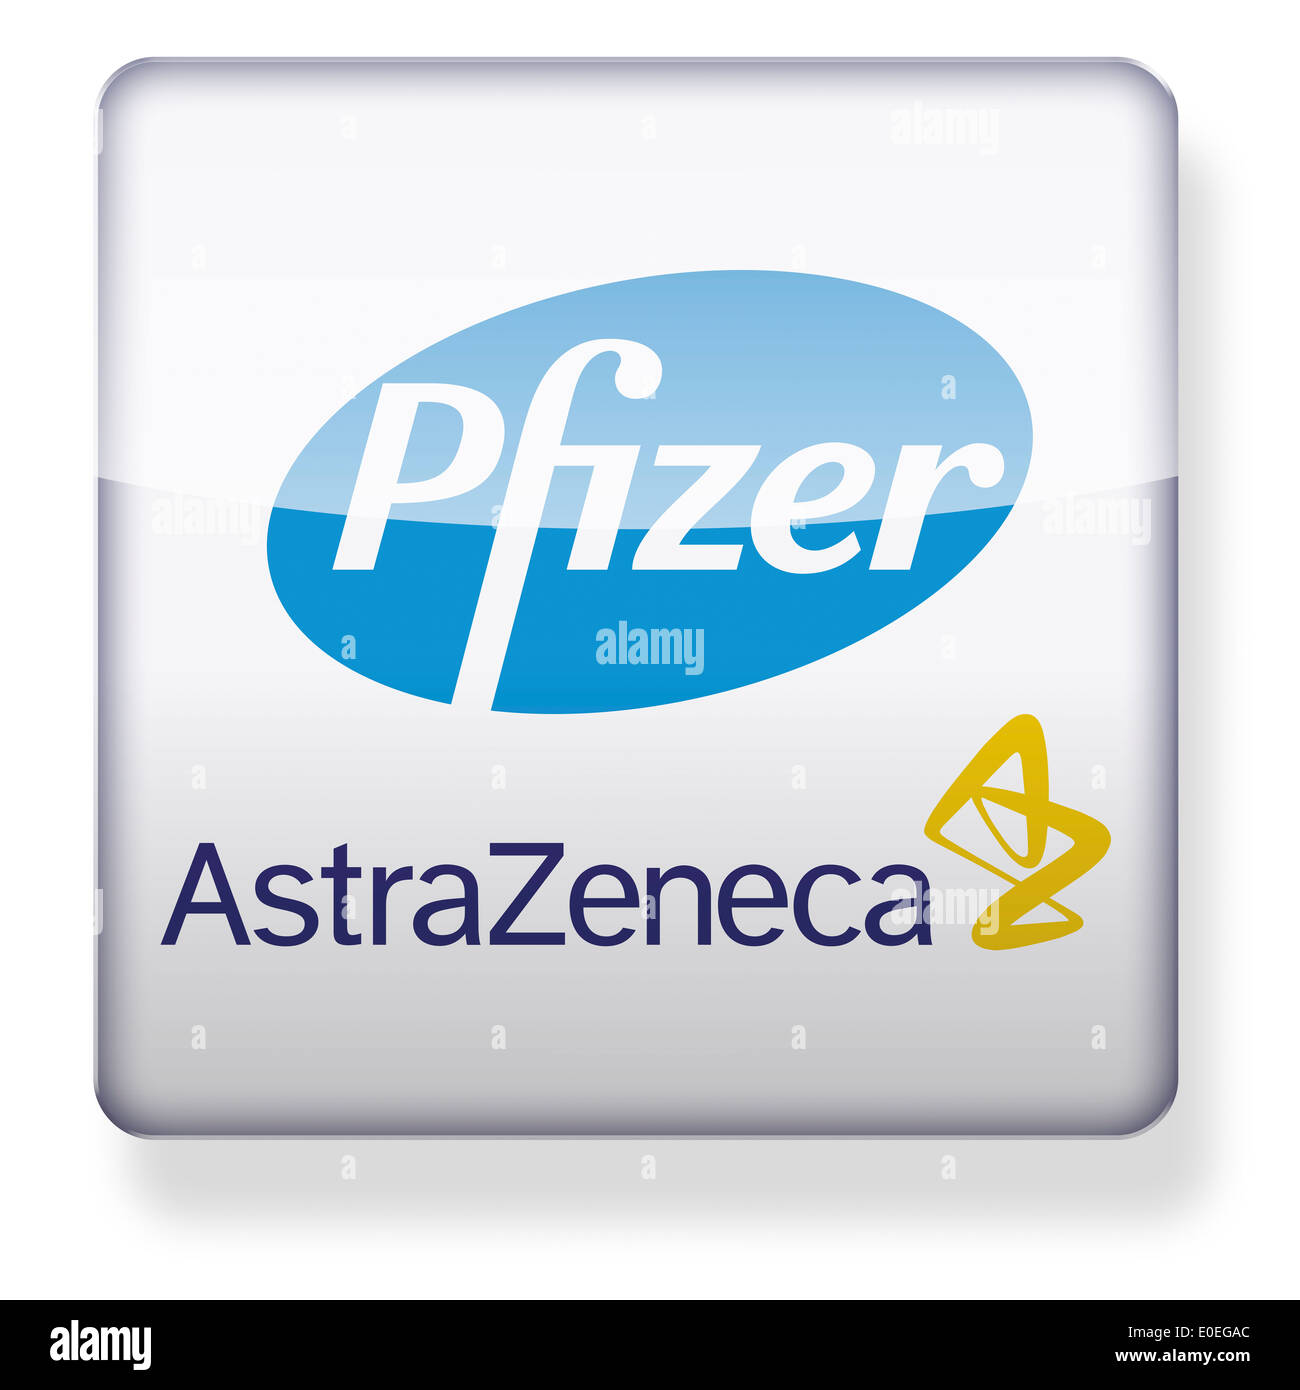 Pfizer y AstraZeneca logos como el icono de una aplicación. Trazado de recorte incluido. Foto de stock